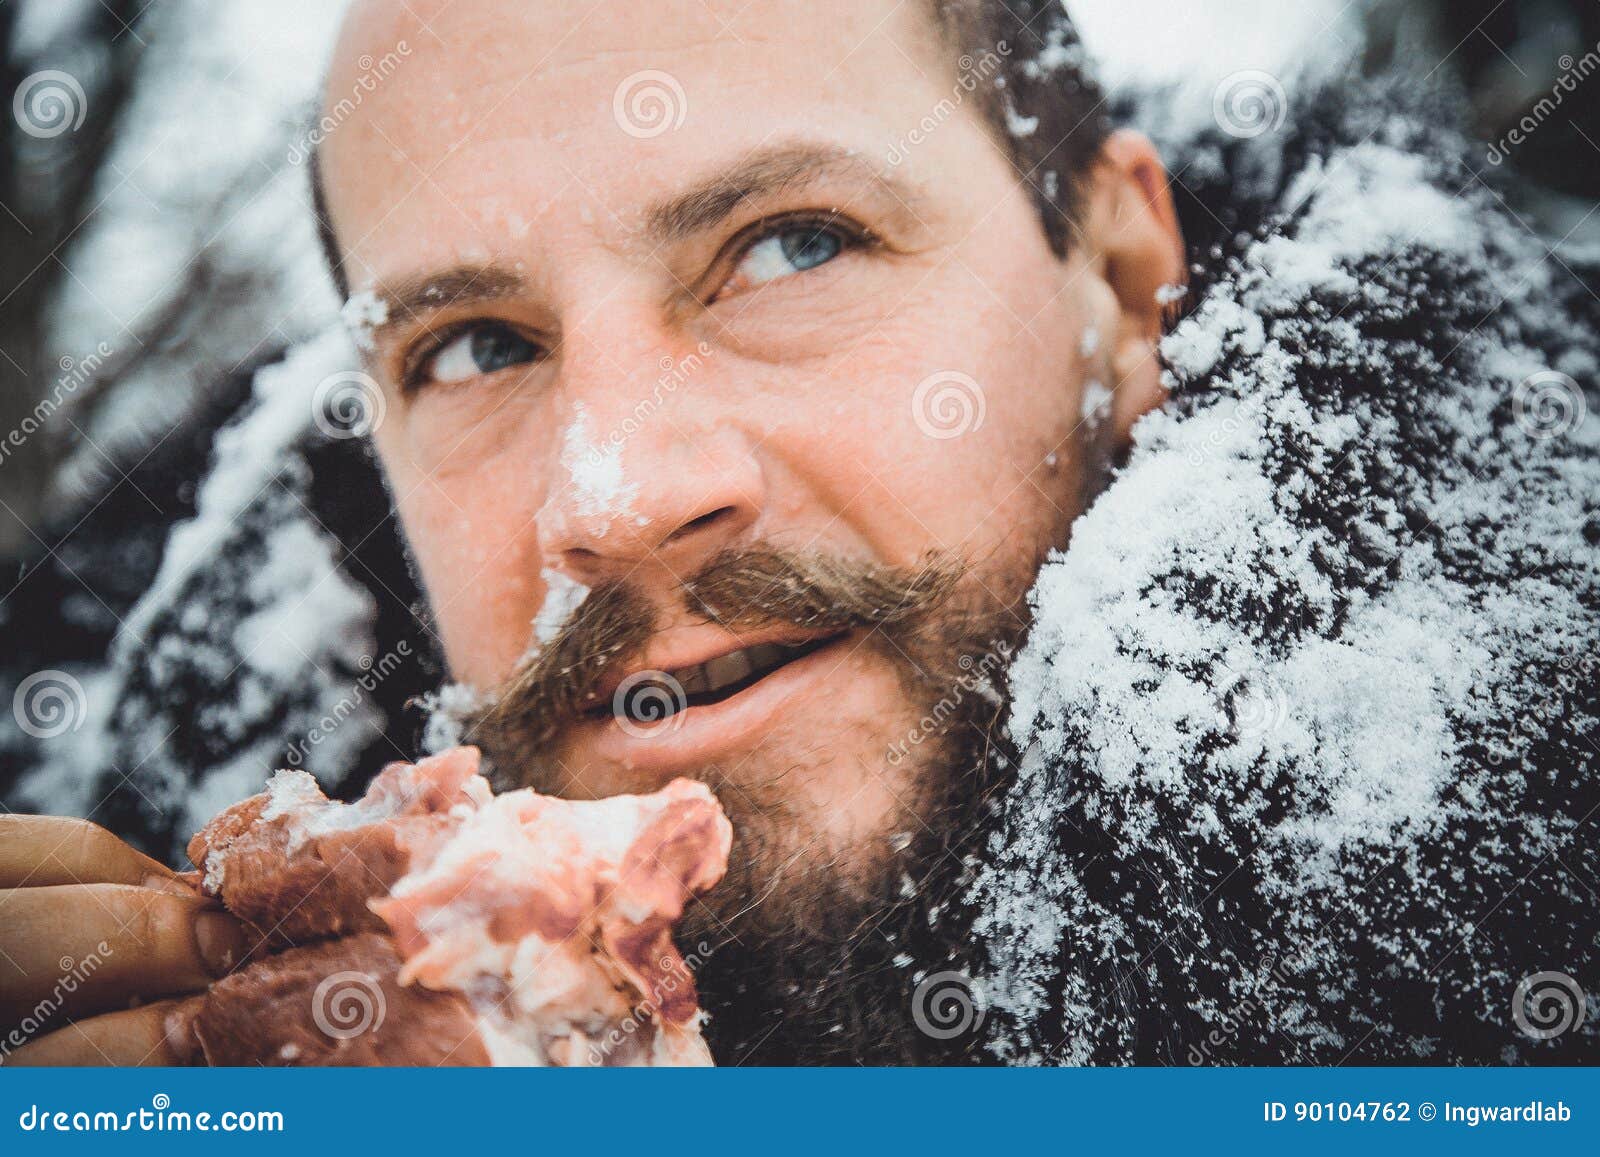 Снег голодный. Мужик с бородой ест мясо. Голодный человек с бородой. Фото мясо и человека с бородой.